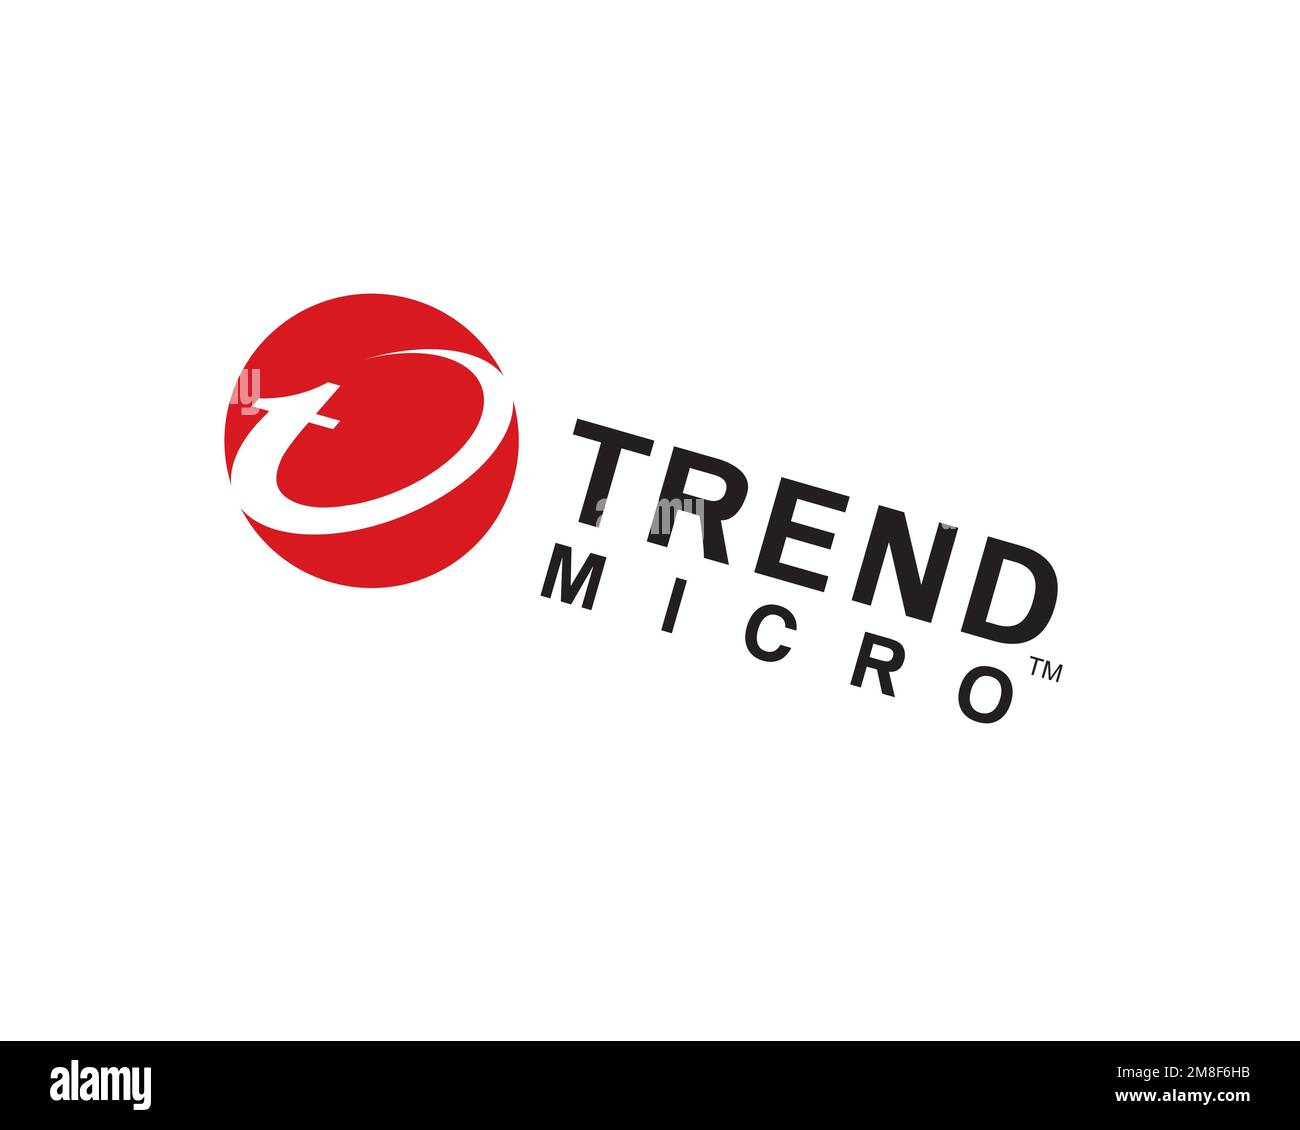 Trend micro, logo pivoté, fond blanc B Banque D'Images